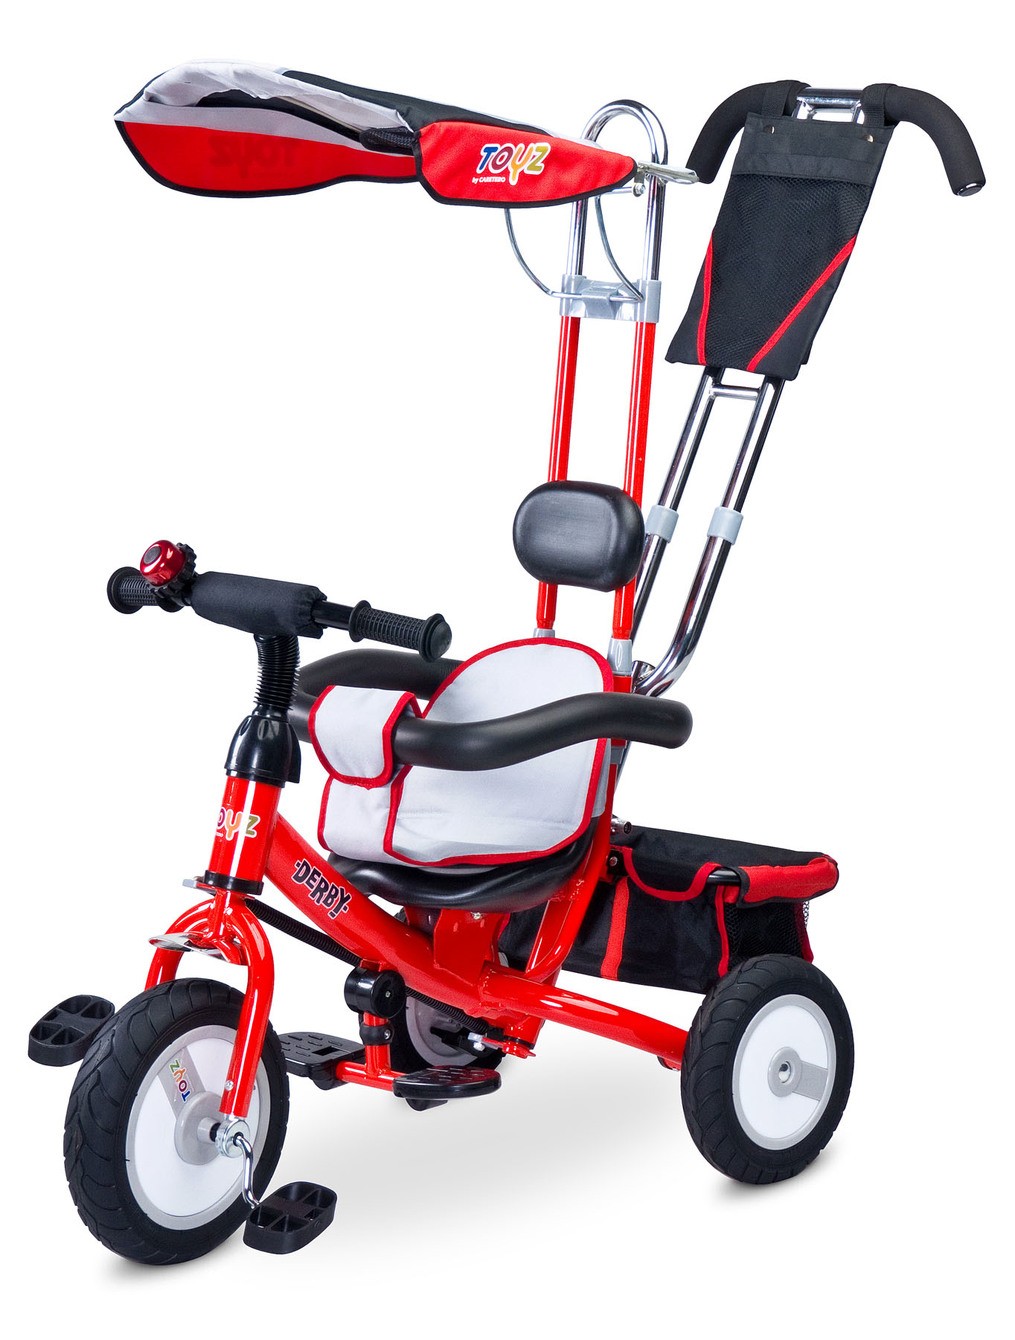 Dětská tříkolka Toyz Derby red, (barva Červená)